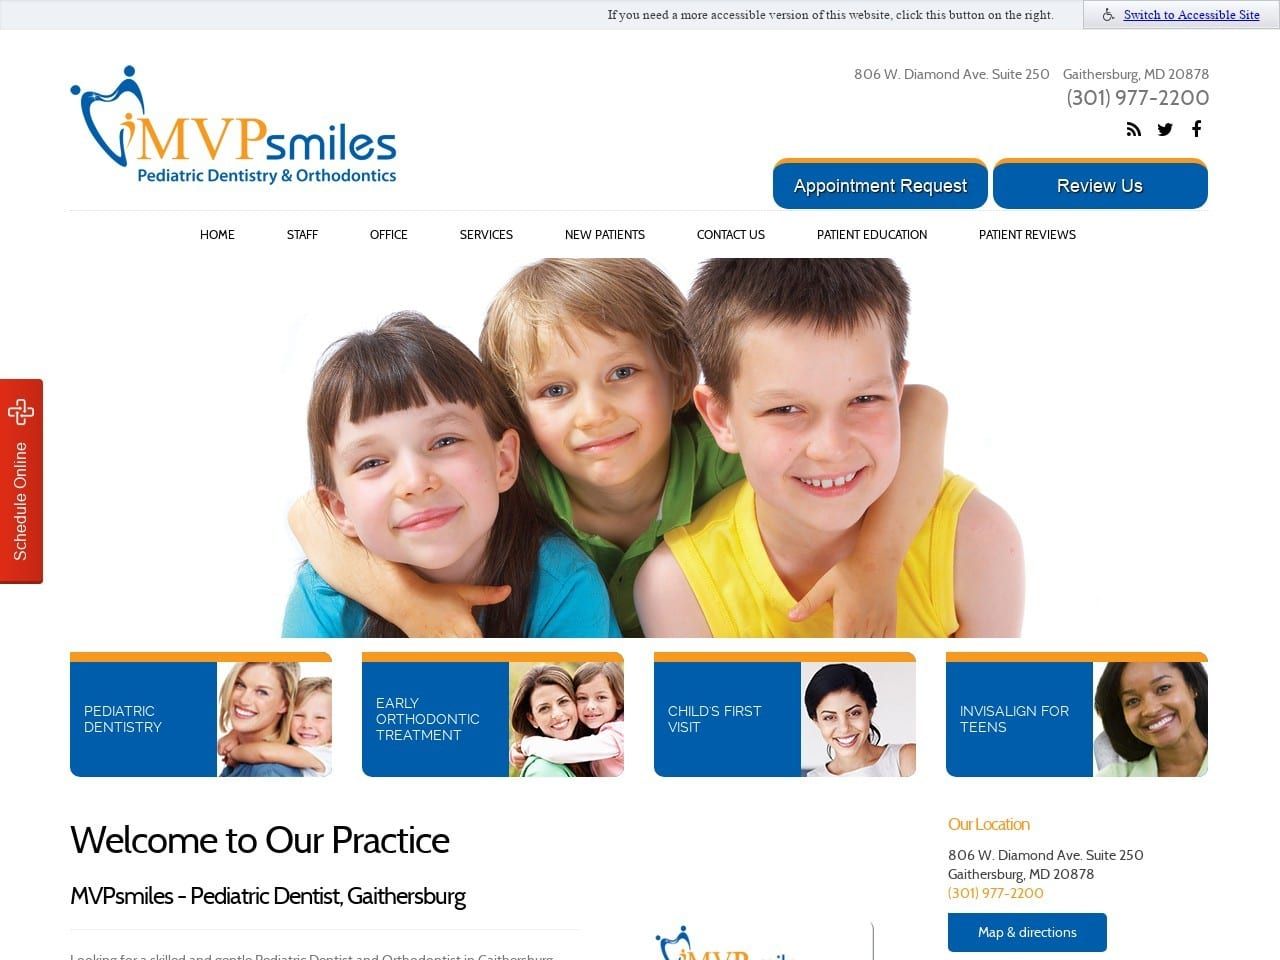 MVPsmiles Website Screenshot from mvpsmiles.com